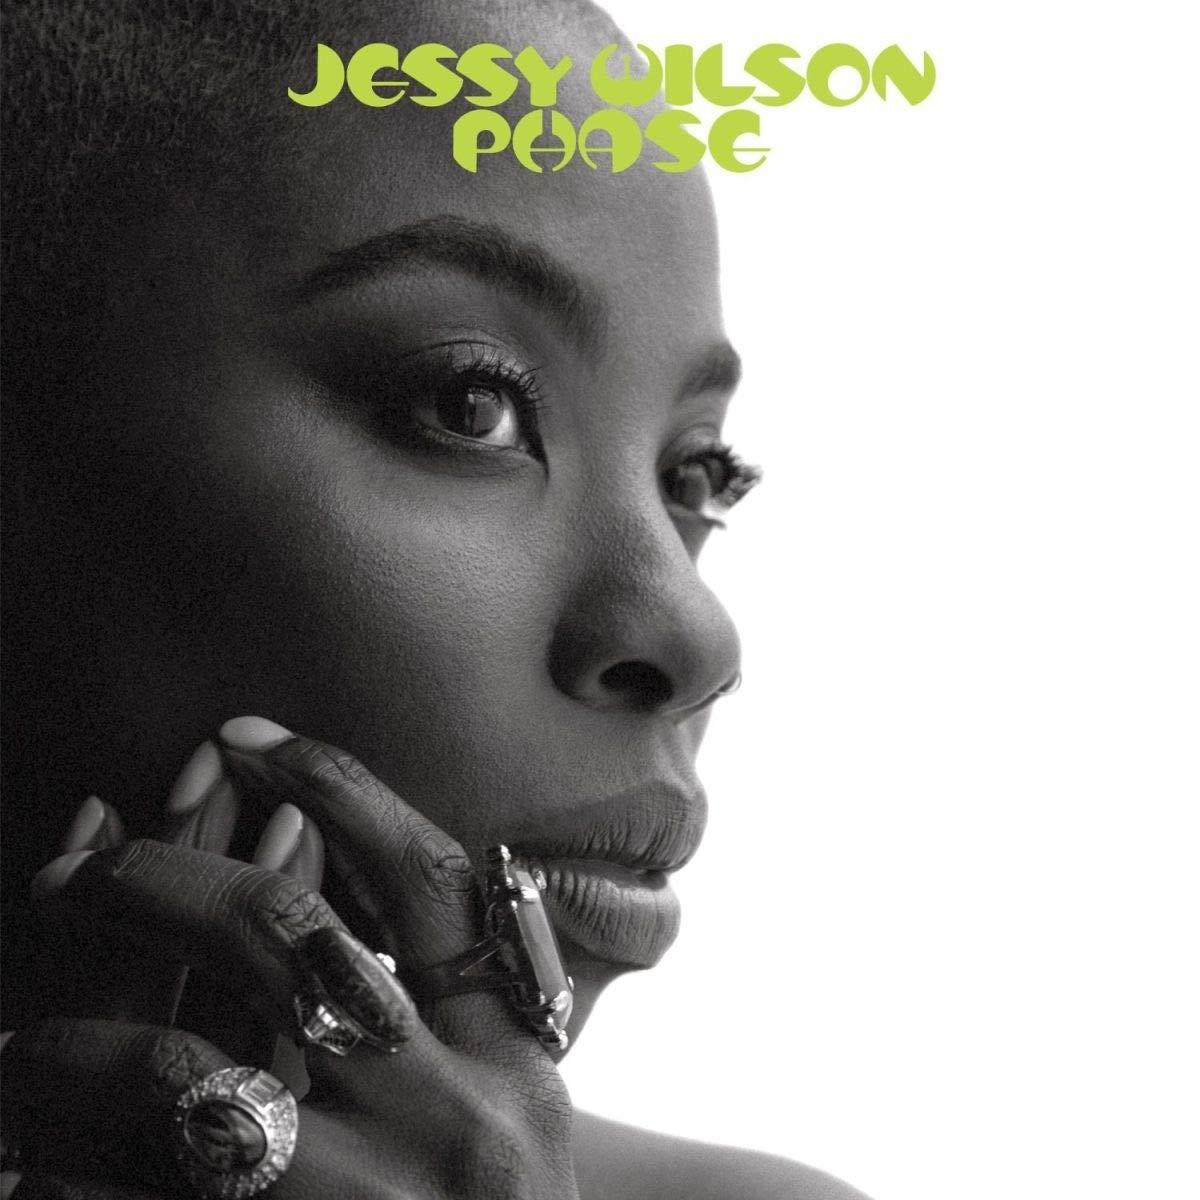 Jessy Wilson - Phase - (CD)